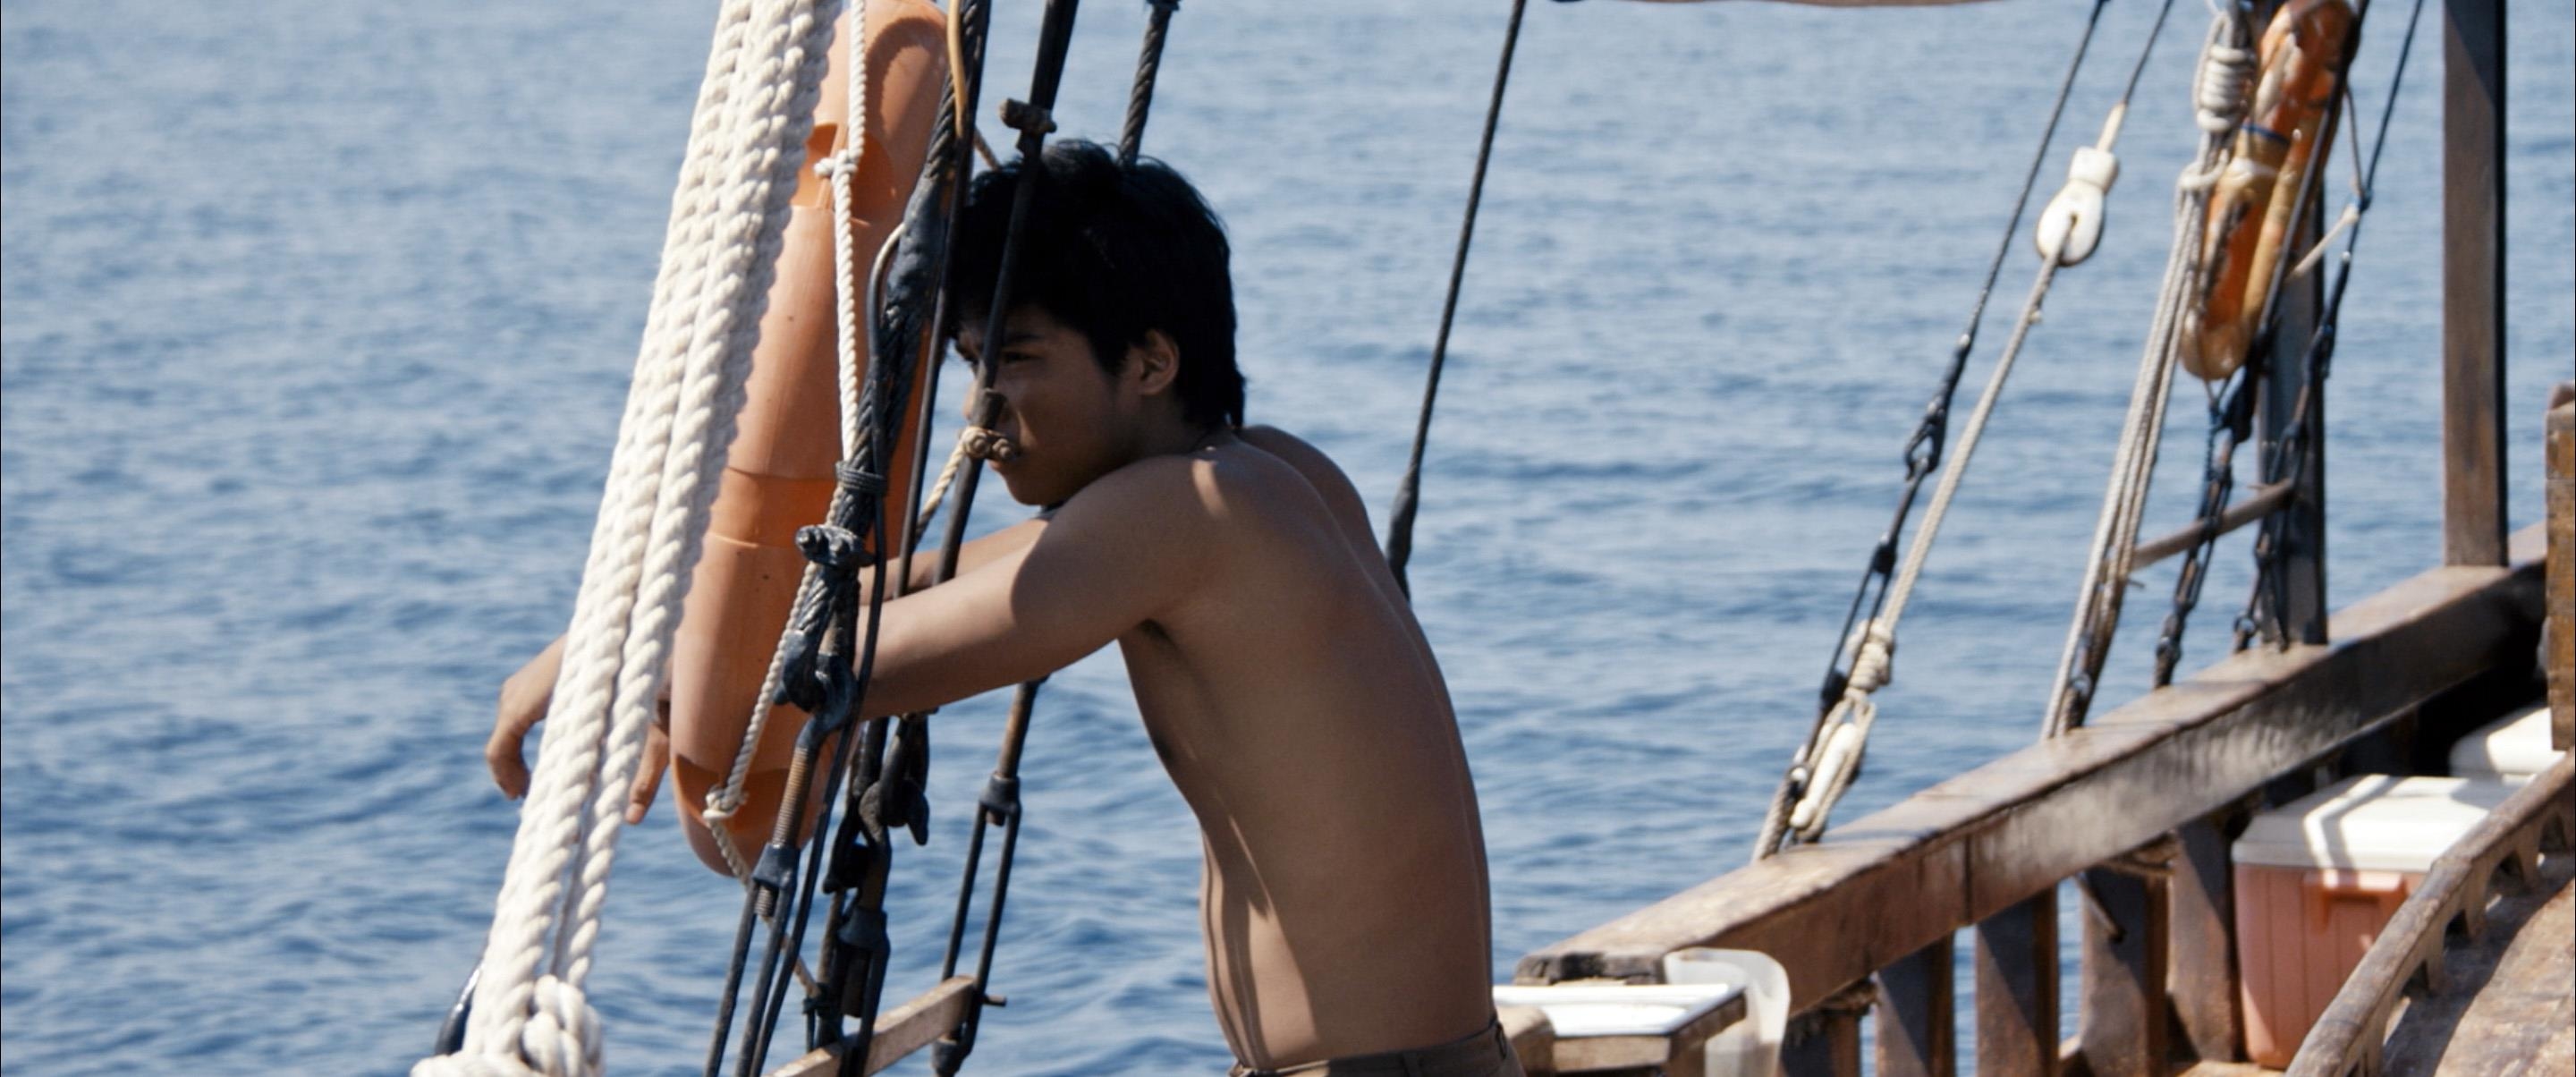 Image du film Une barque sur l'océan 8d9a1a39-2713-4070-8e62-dcf2b63fdaea